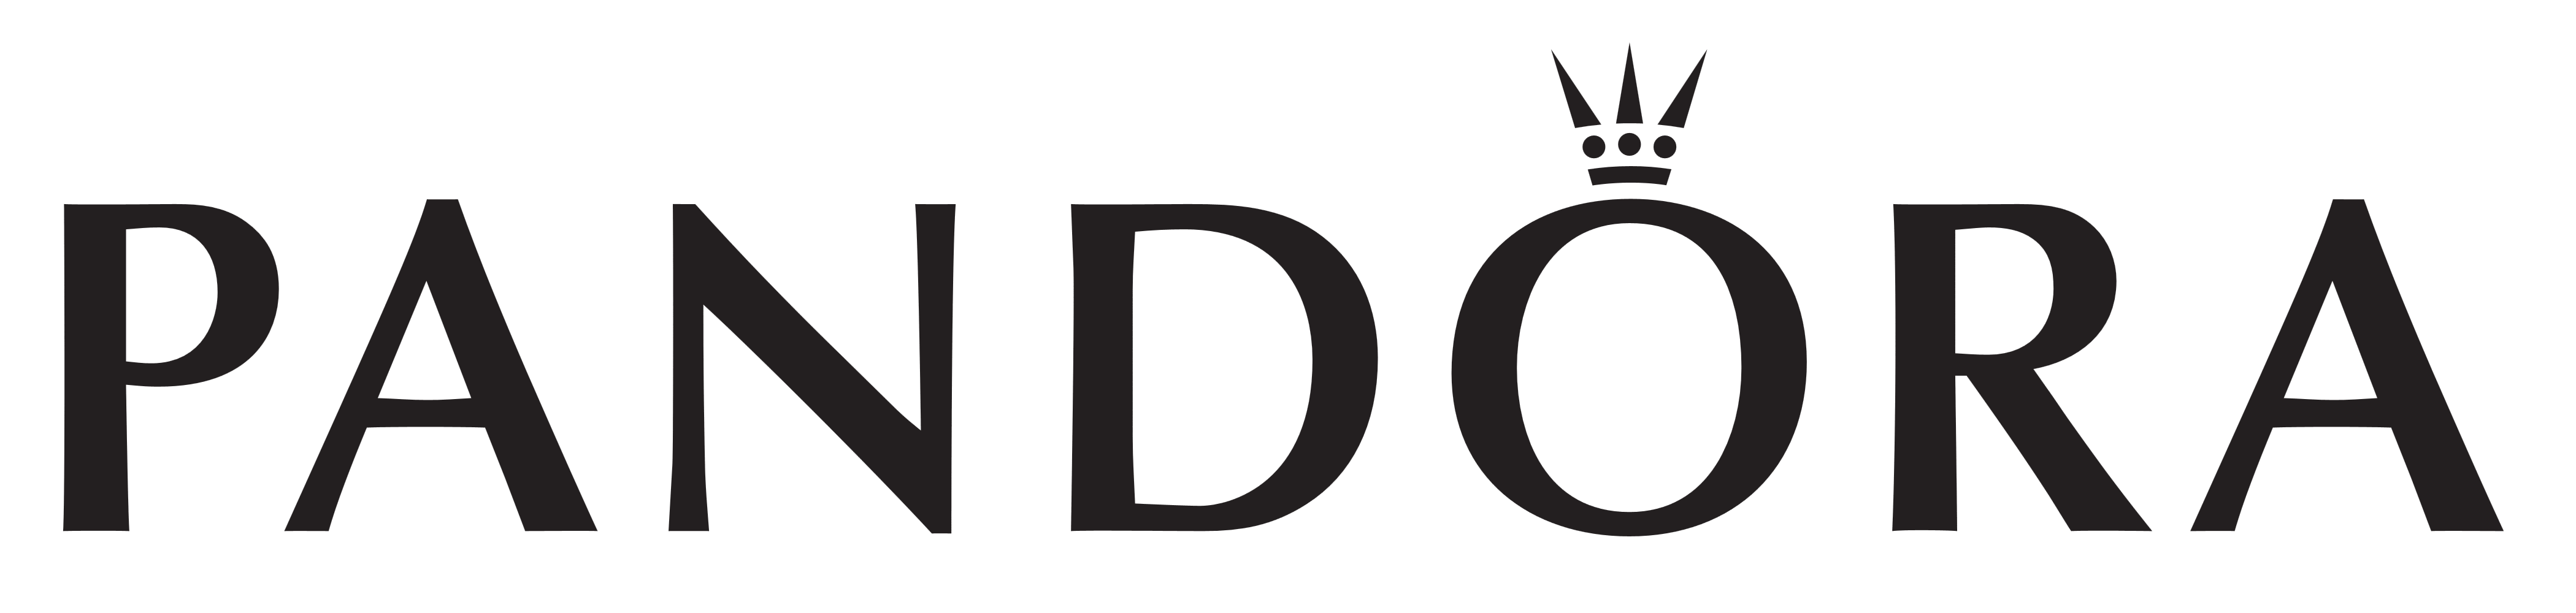 Pandora logo, logotype